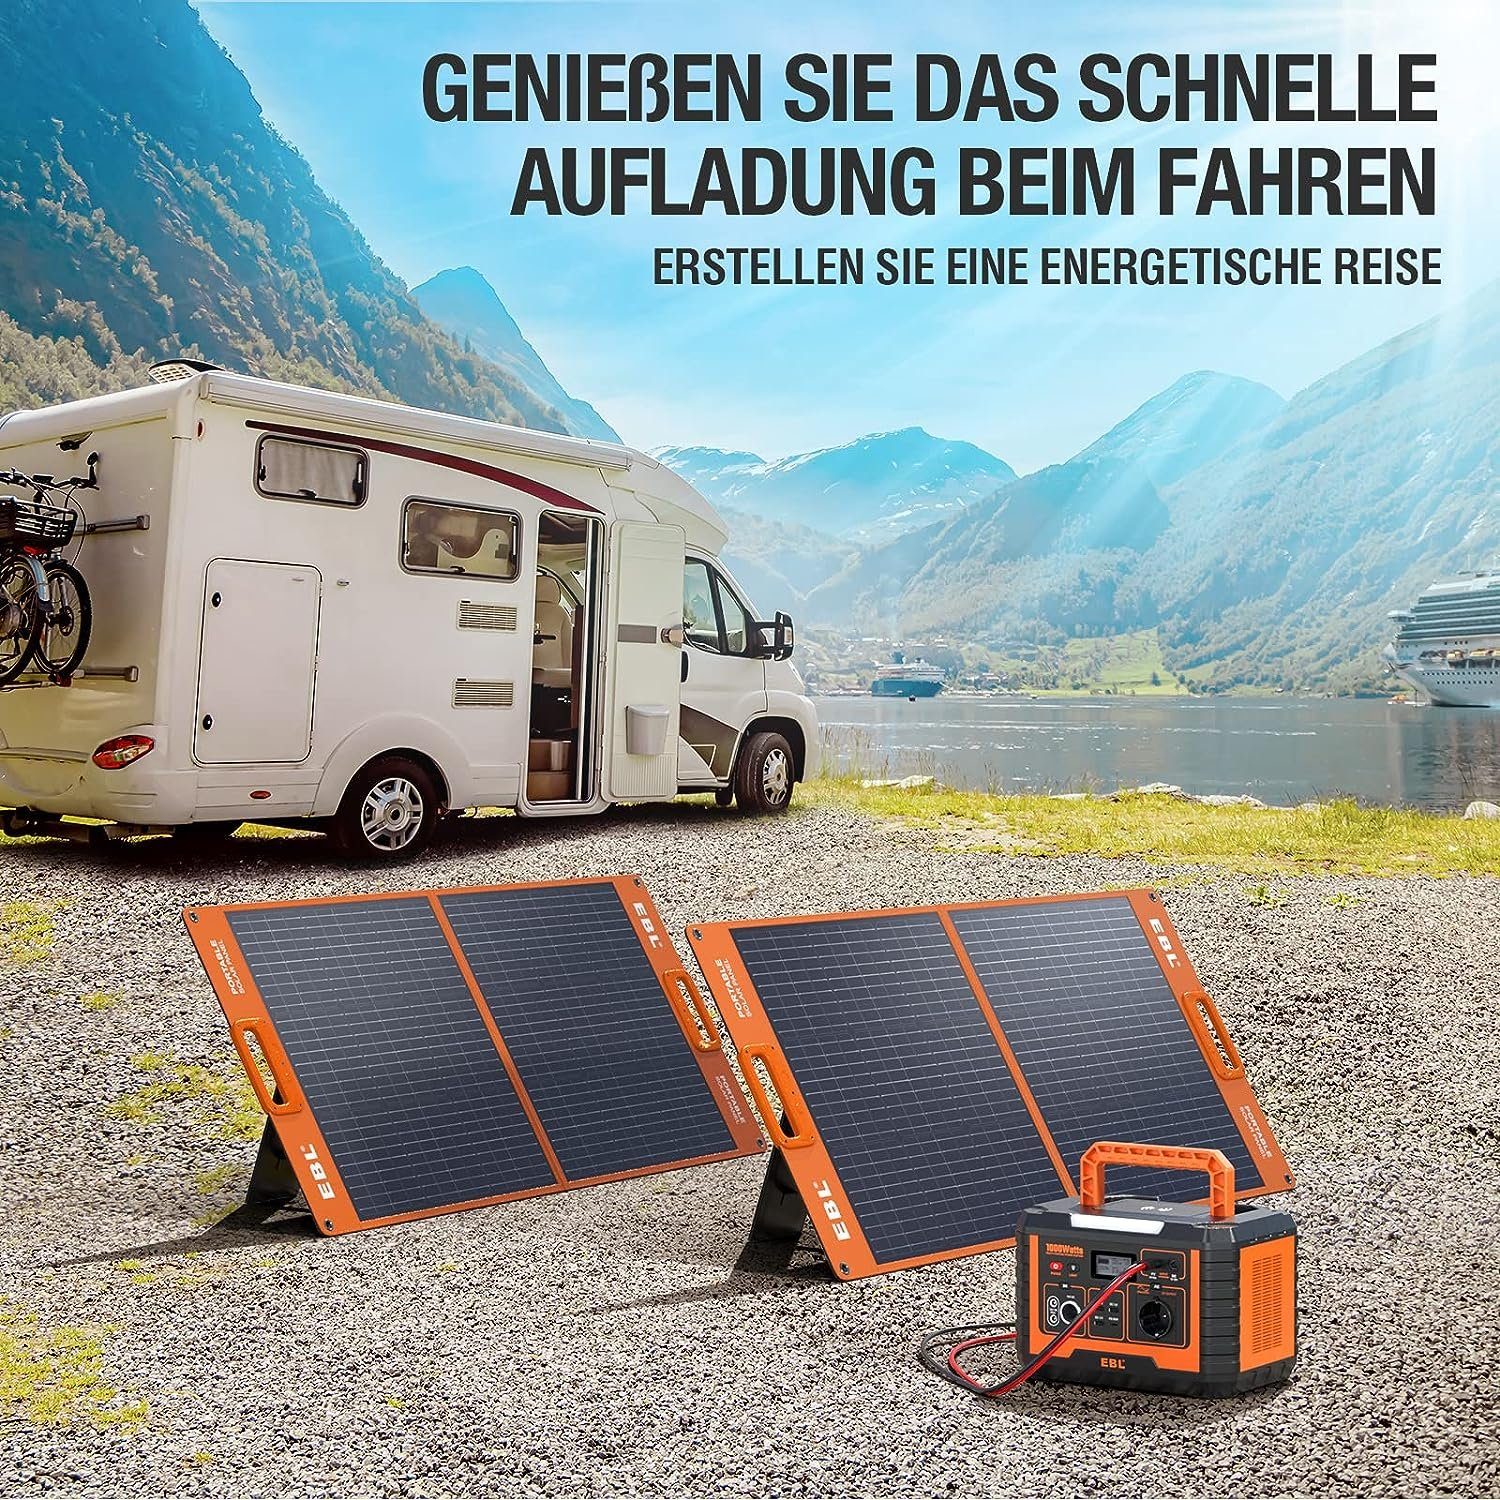 Powerstation, EBL Hause, Solarpanel in zu Tragbare 2x100W und Wohnmobil für Solargenerator kW, 1,00 Notfall 1000W Outdoor-Camping, (1-tlg), Stromerzeuger